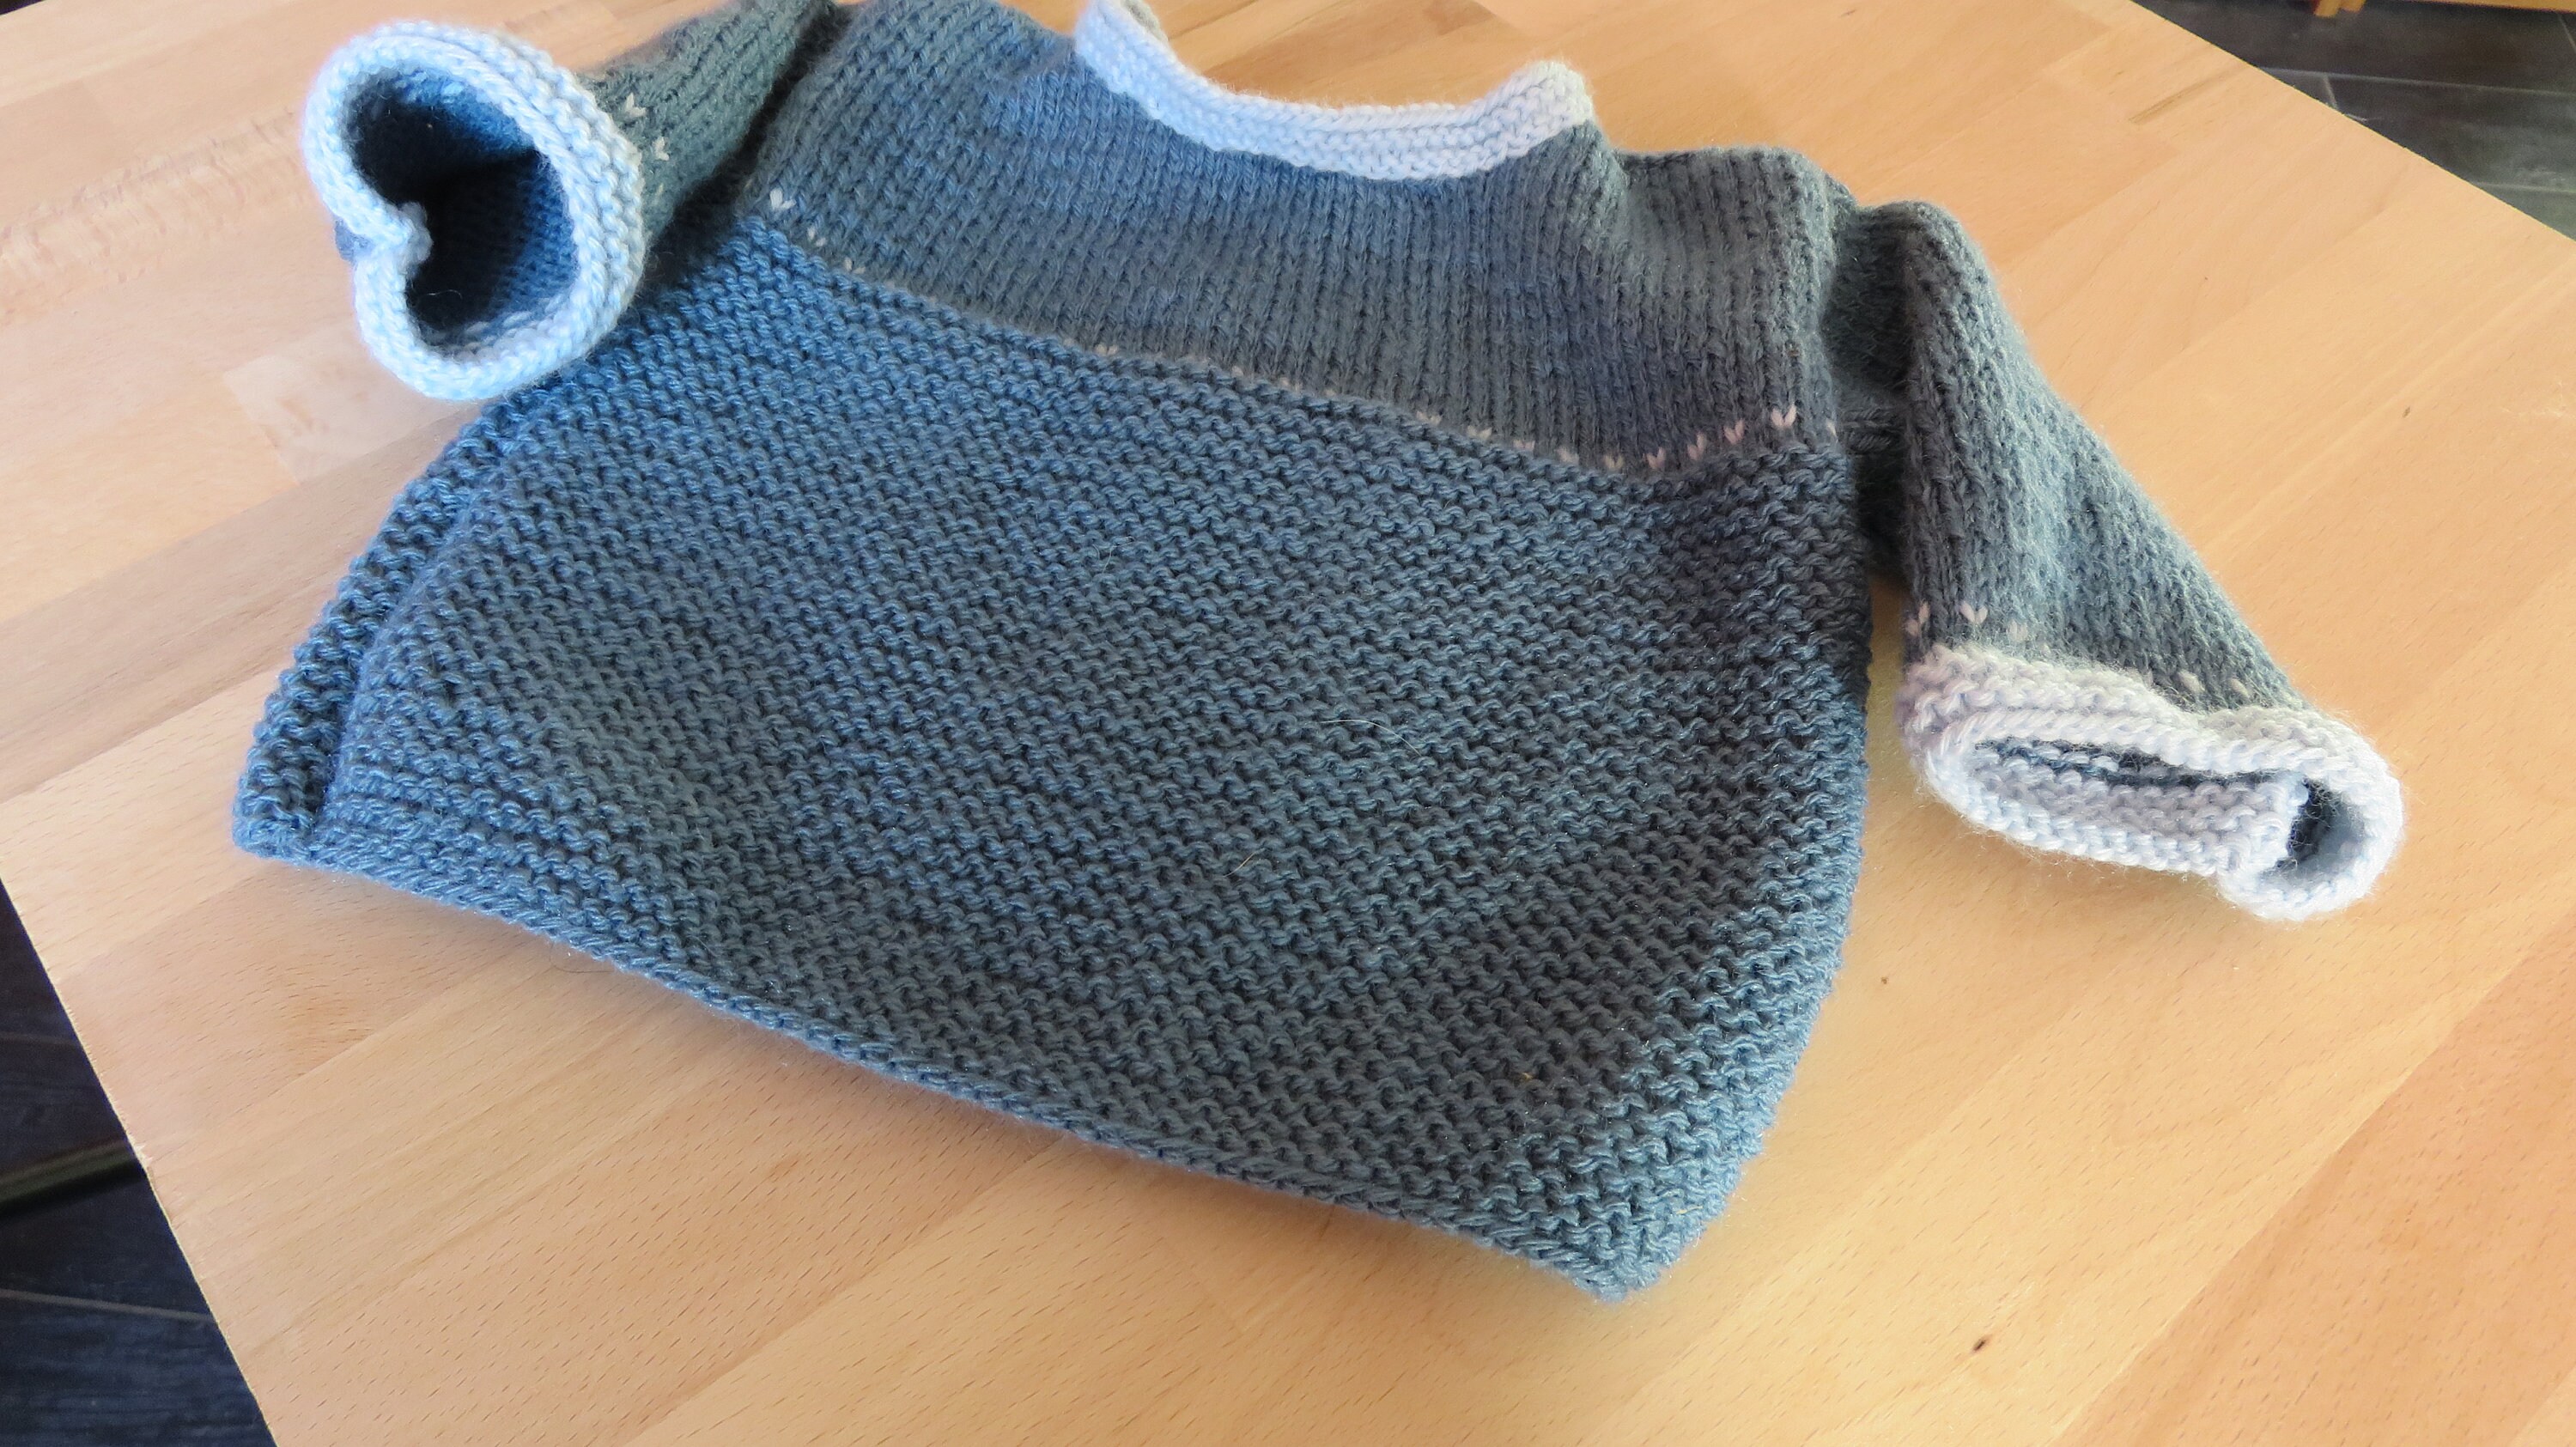 Brassière bébé garçon 0/3 mois en maille tricot point mousse et torsades  bleu layette fabriqué au Portugal à 8,99 €